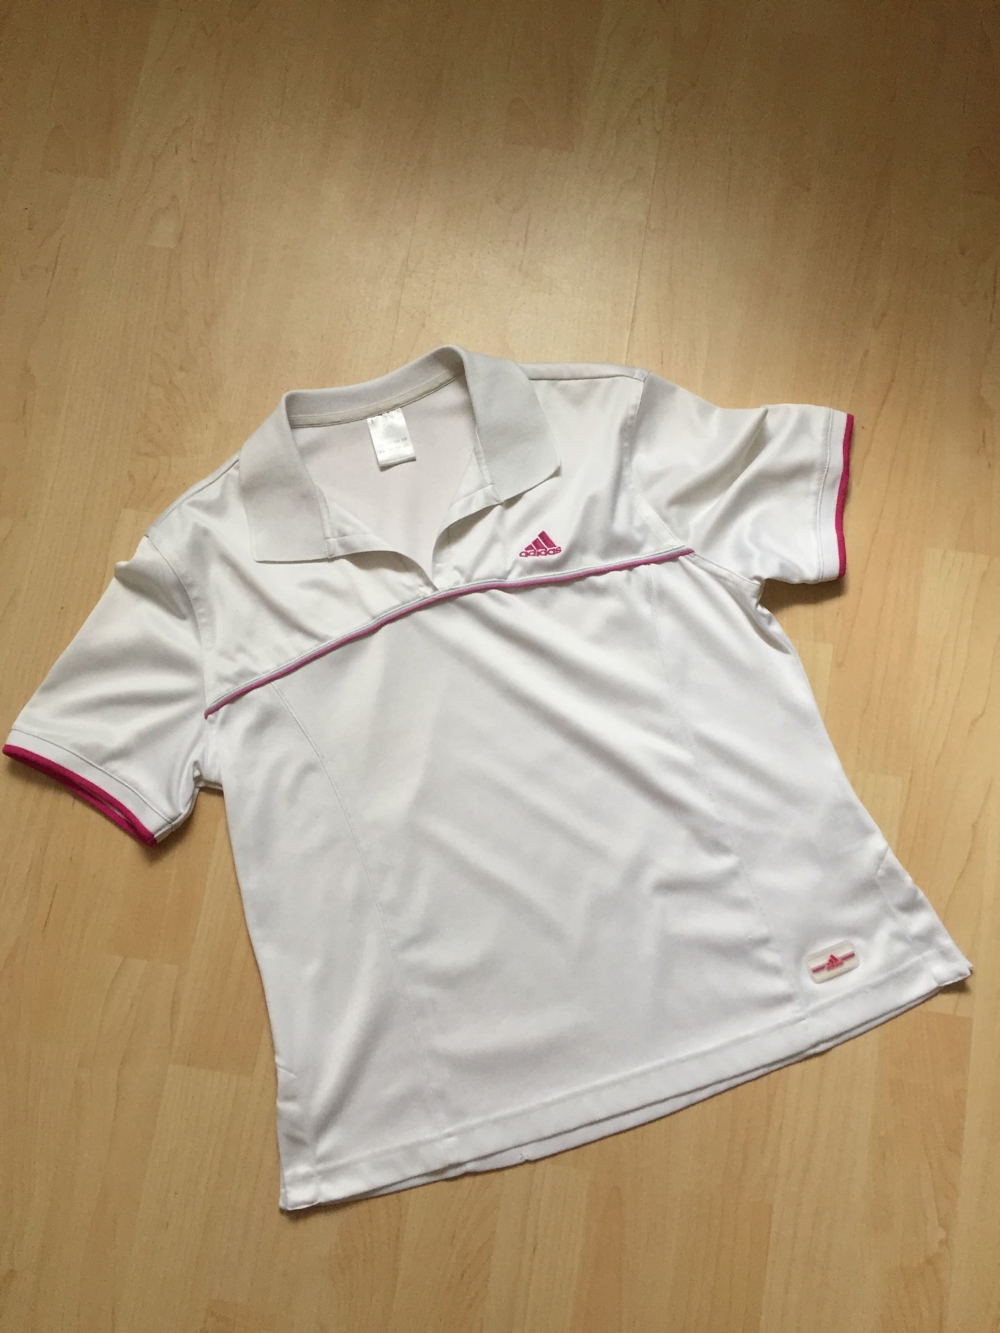 Sportbekleidung Poloshirt + Weste (Set) Adidas Gr. M